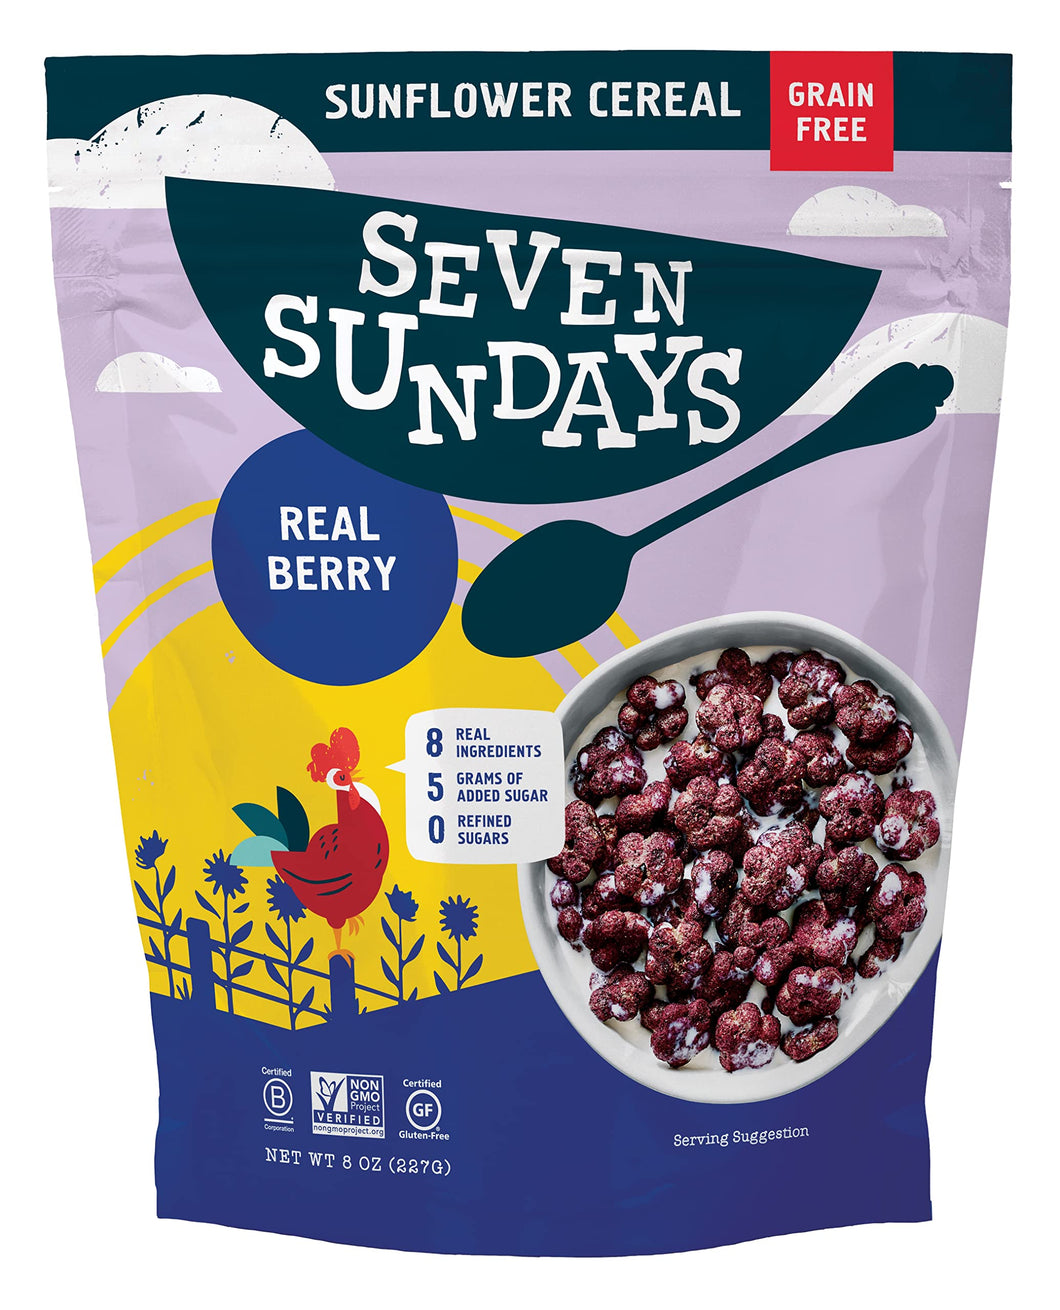 Seven Sundays Grain Free Cereal - Real Berry - 8 Oz Bag - Gluten and Grain Free, Paleo, Keto Friendly, No Refined Sugar, Vegan, Non-GMO